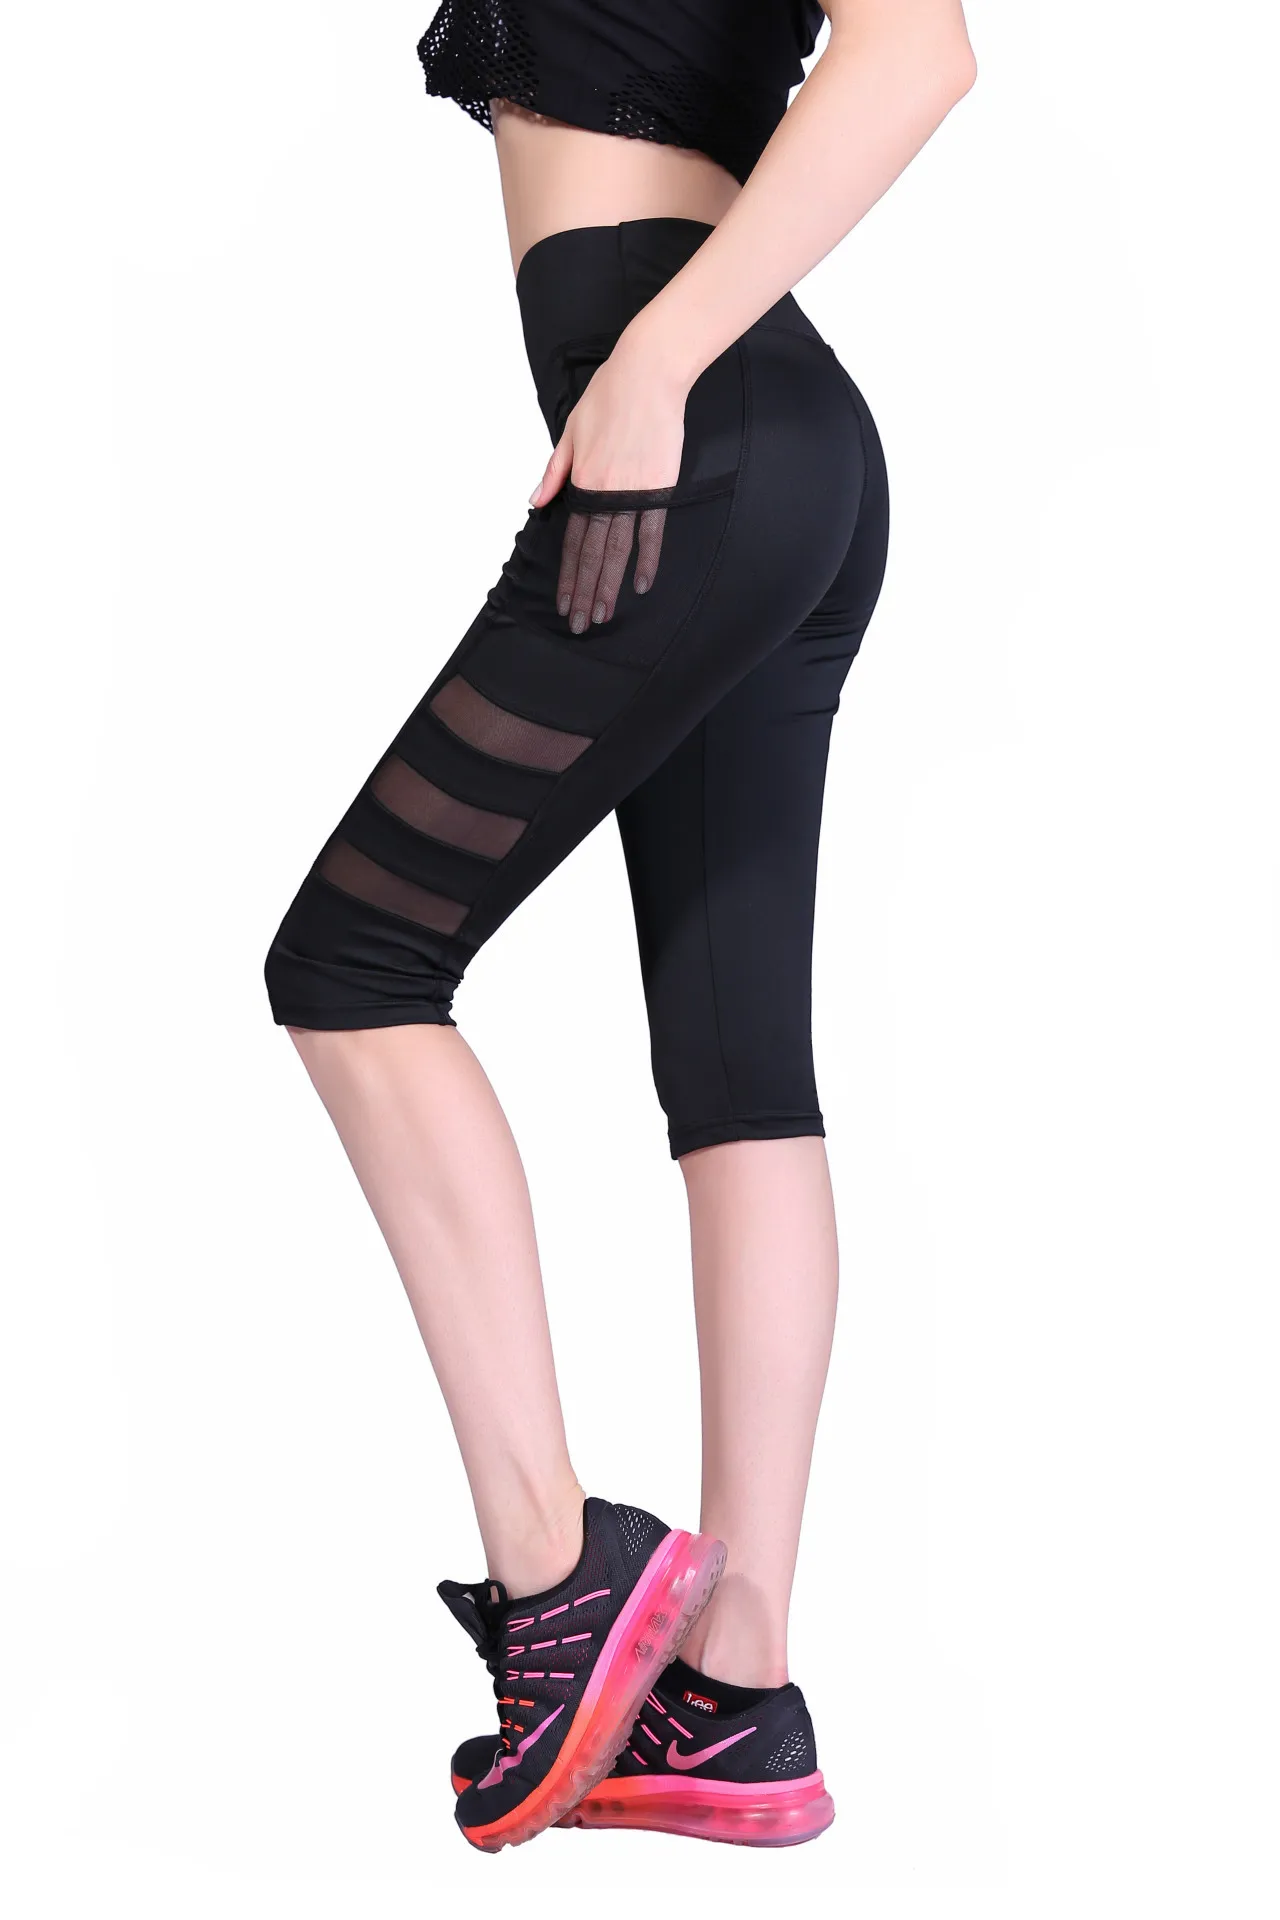 

Pantalones de yoga delgados bolsillo de malla correr deportes fitness deportes ocio levantamiento de cadera leggings de yoga